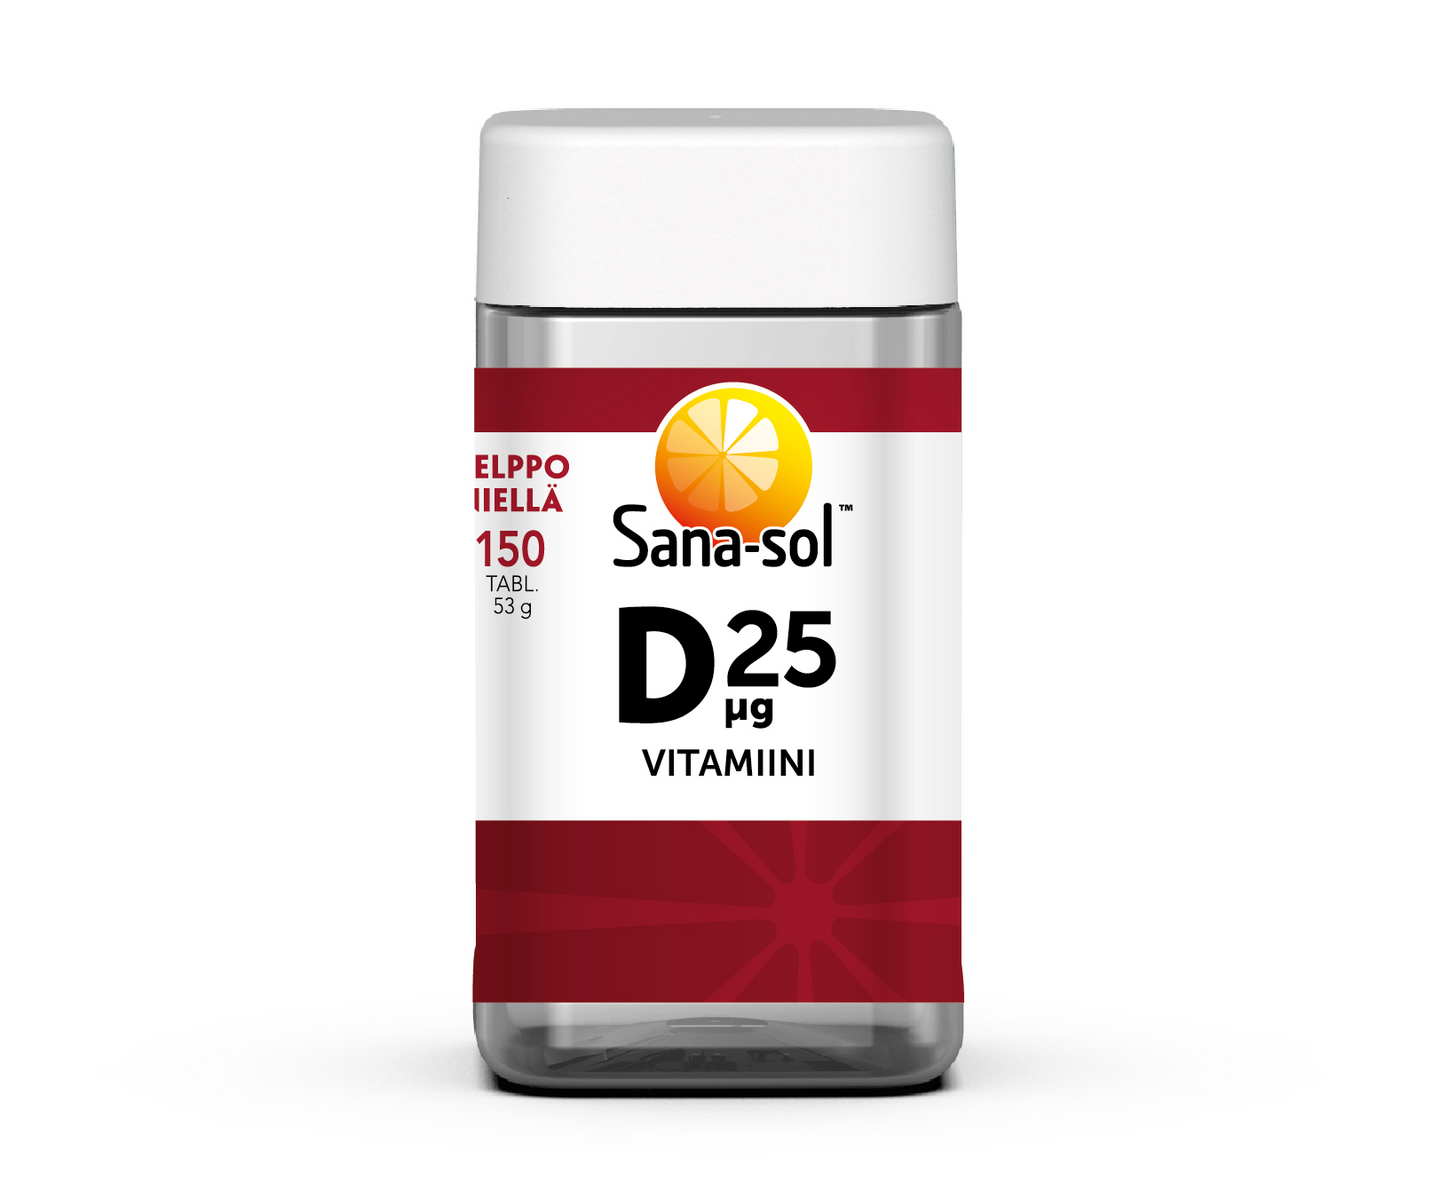 Sana-sol D-vitamiini 25µg 150tabl/53g